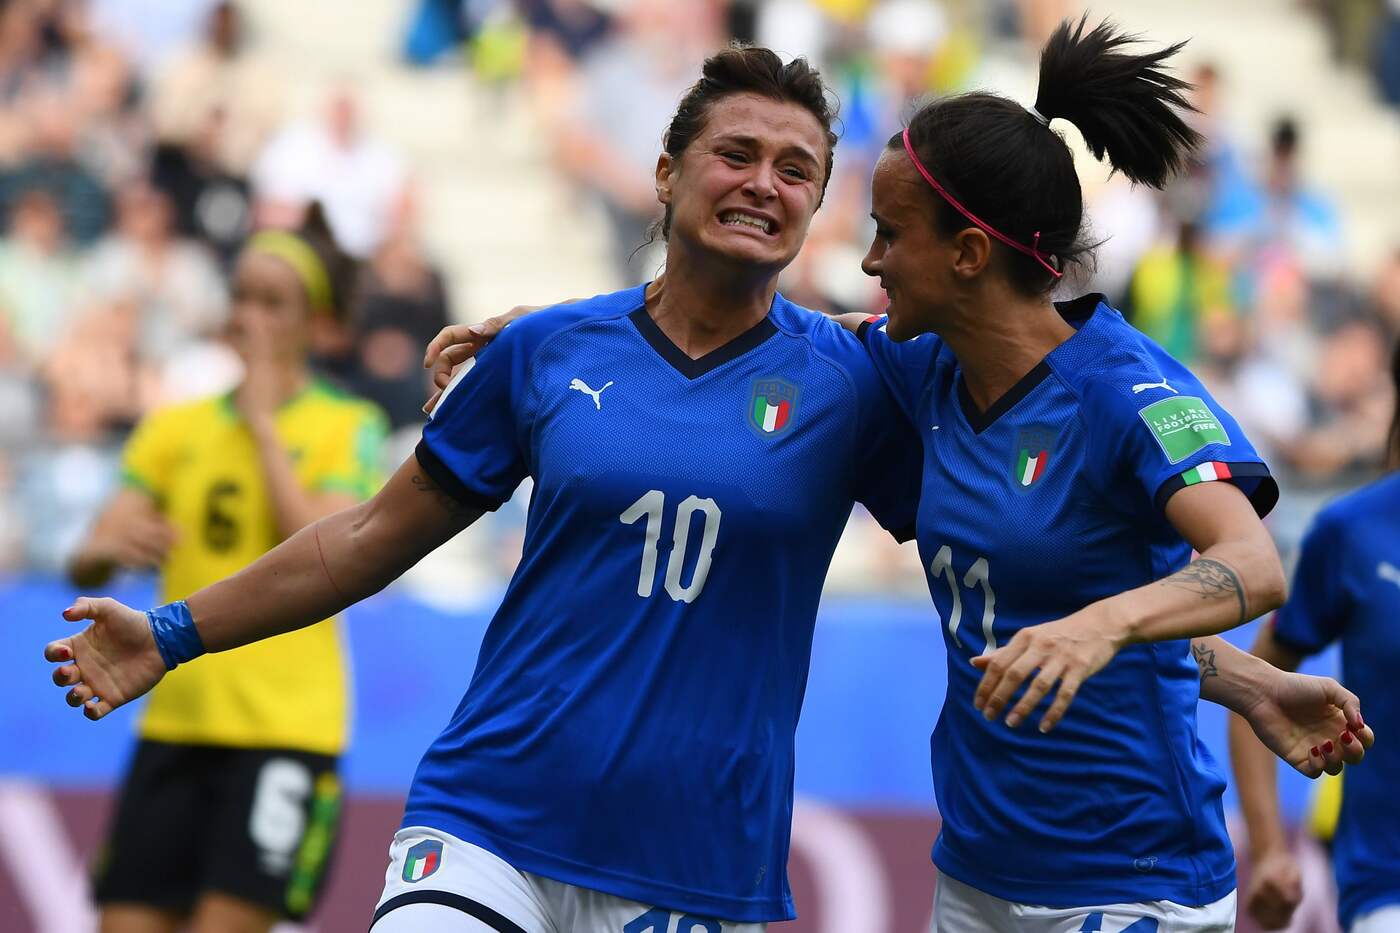 Mondiale donne, Italia-Brasile martedì 18 giugno: analisi e pronostico della terza giornata del gruppo C del torneo iridato